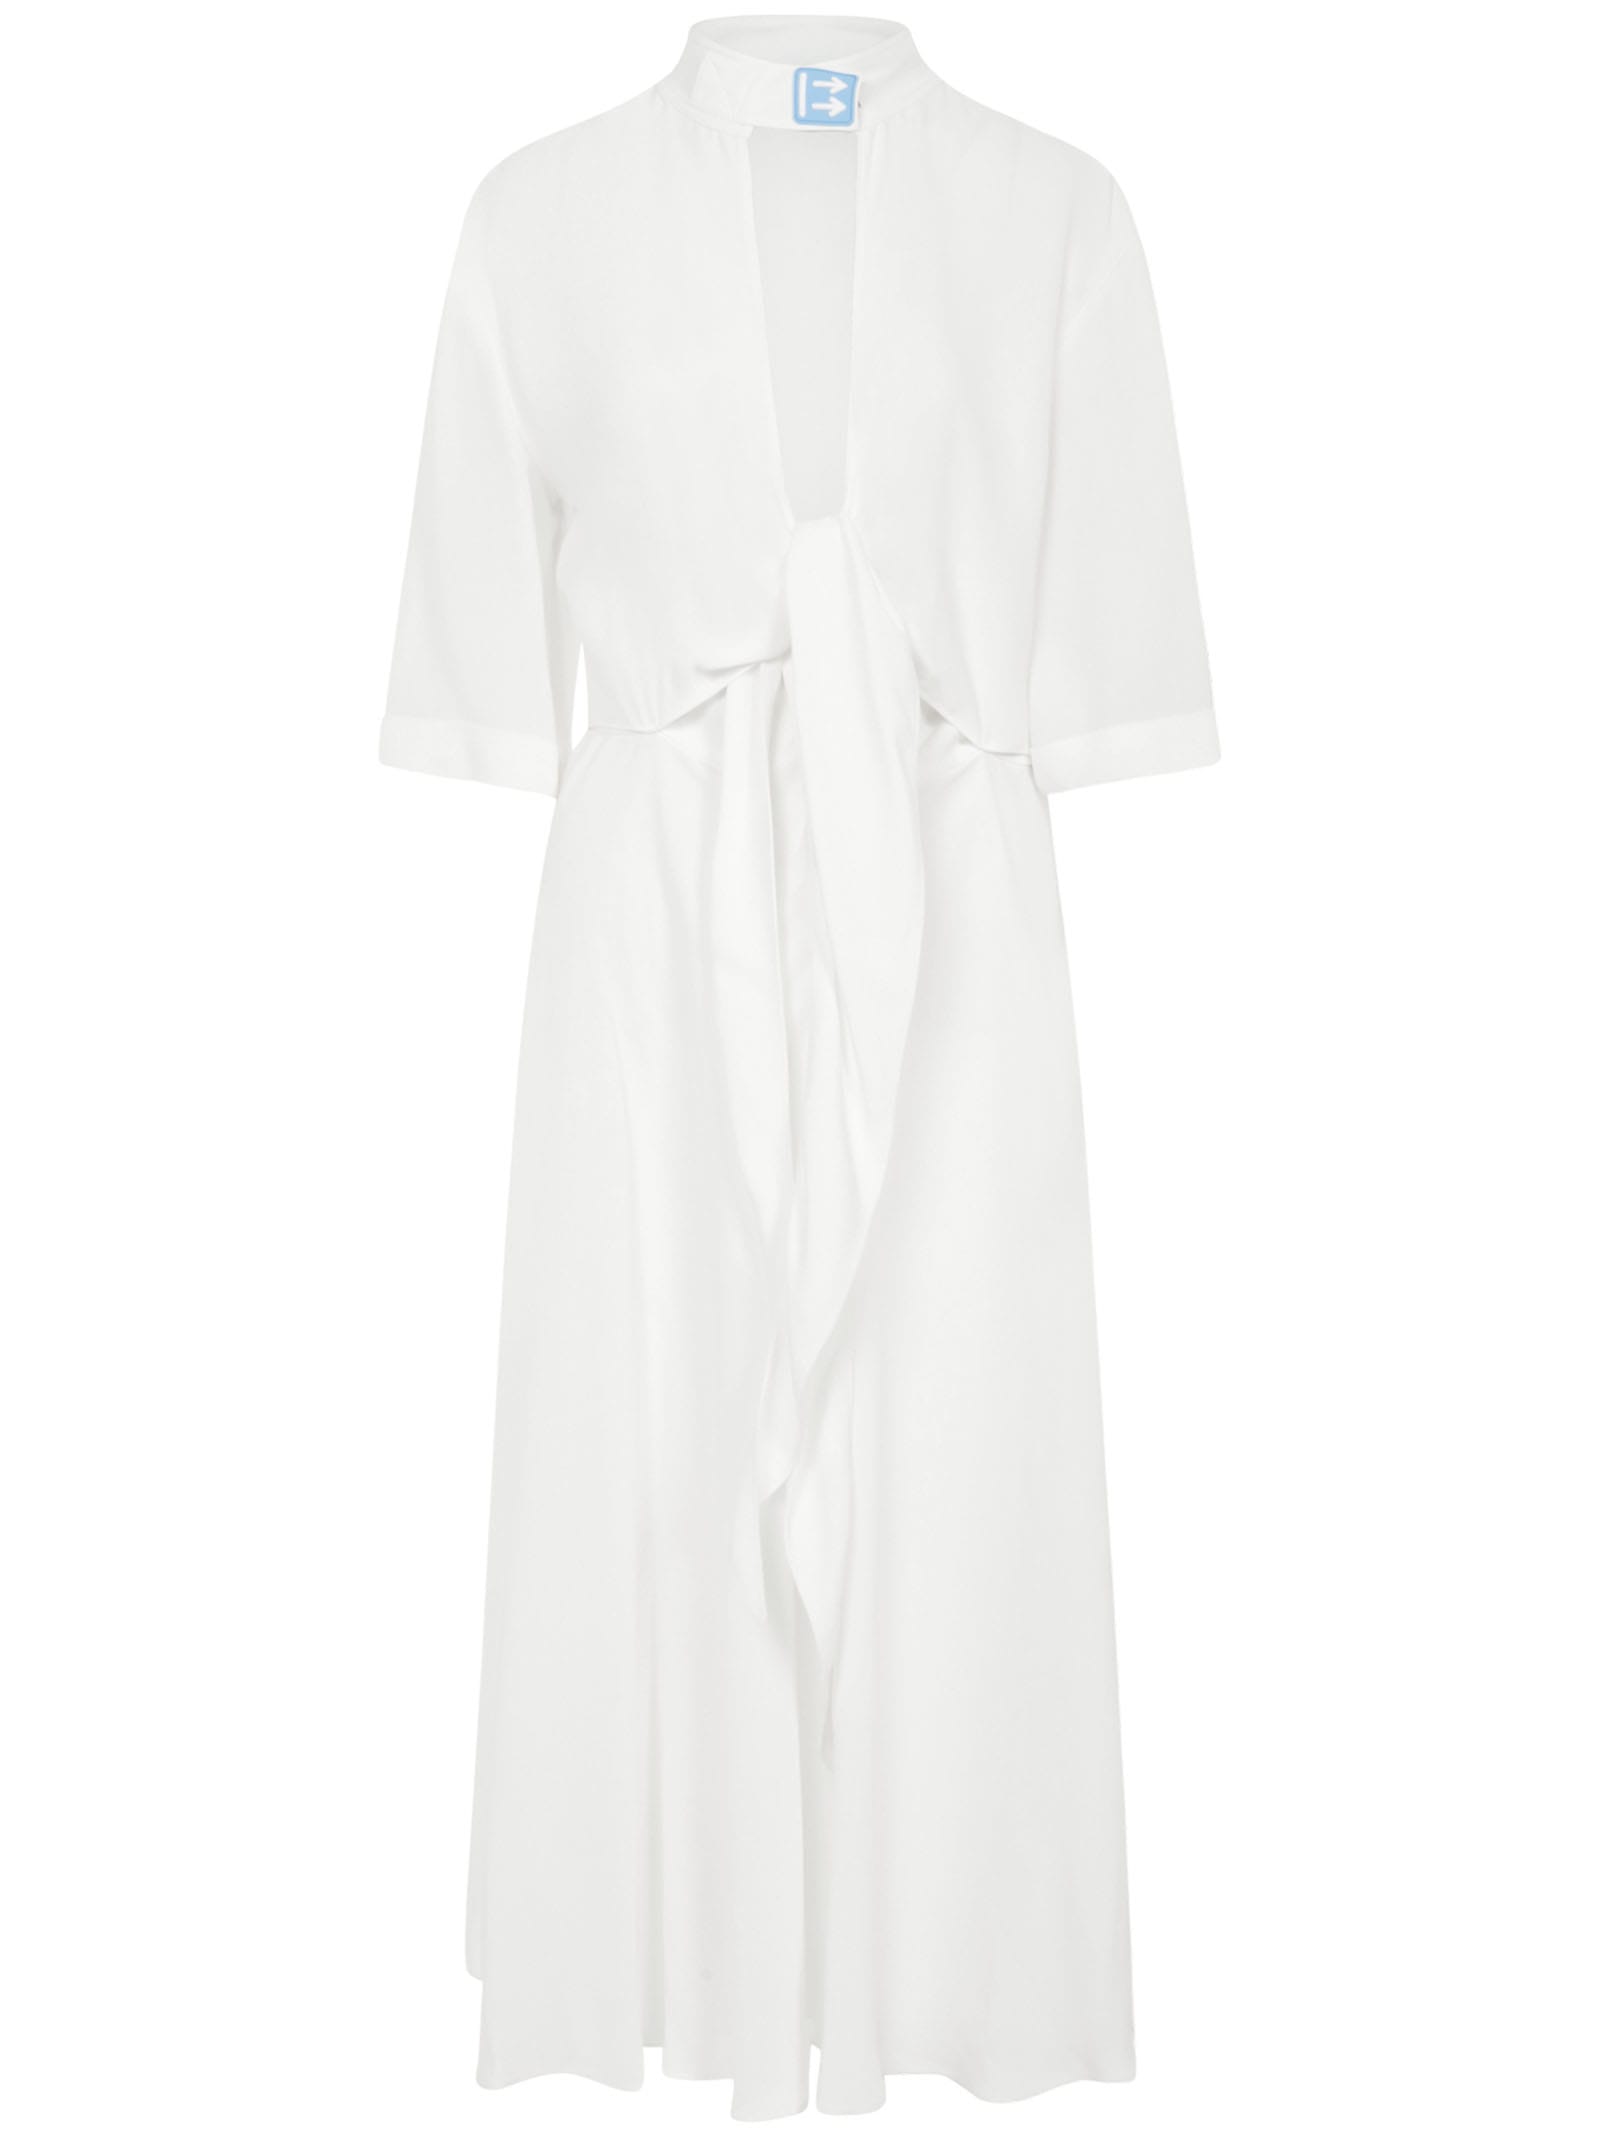 OFF-WHITE OFF-WHITE DRESS,11274917